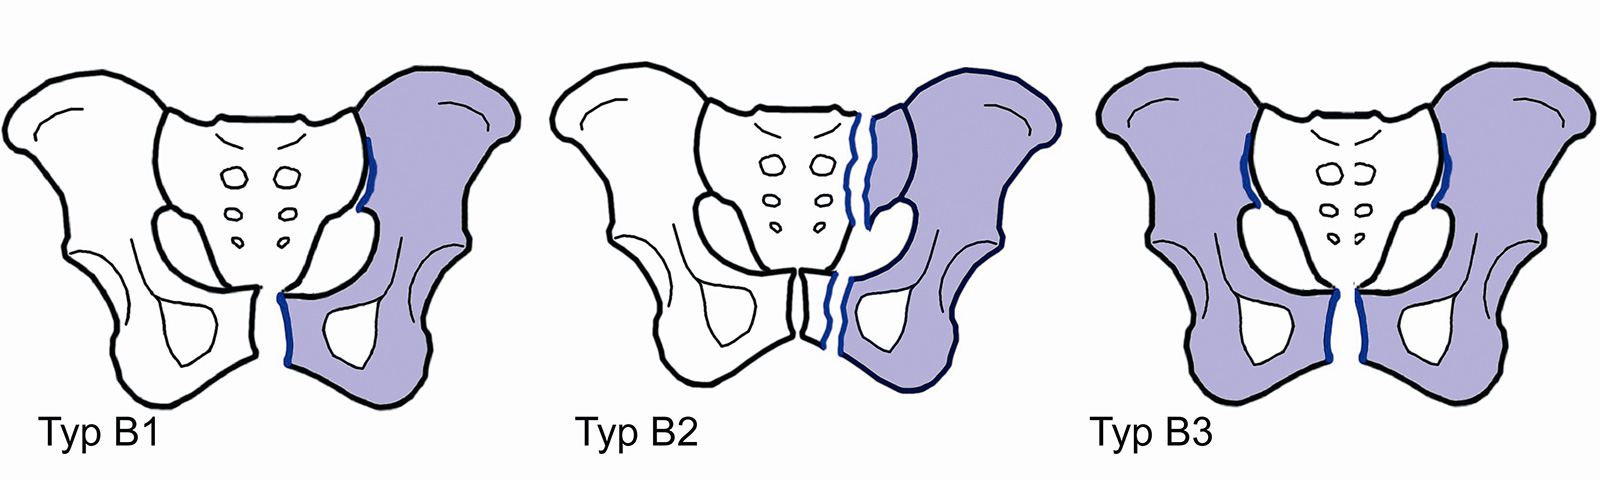 Abb. 3-13: ABC Klassifikation nach Tile: Beispiele für Typ B Frakturen (B2: entweder vorderer Beckenring oder Sakrum)